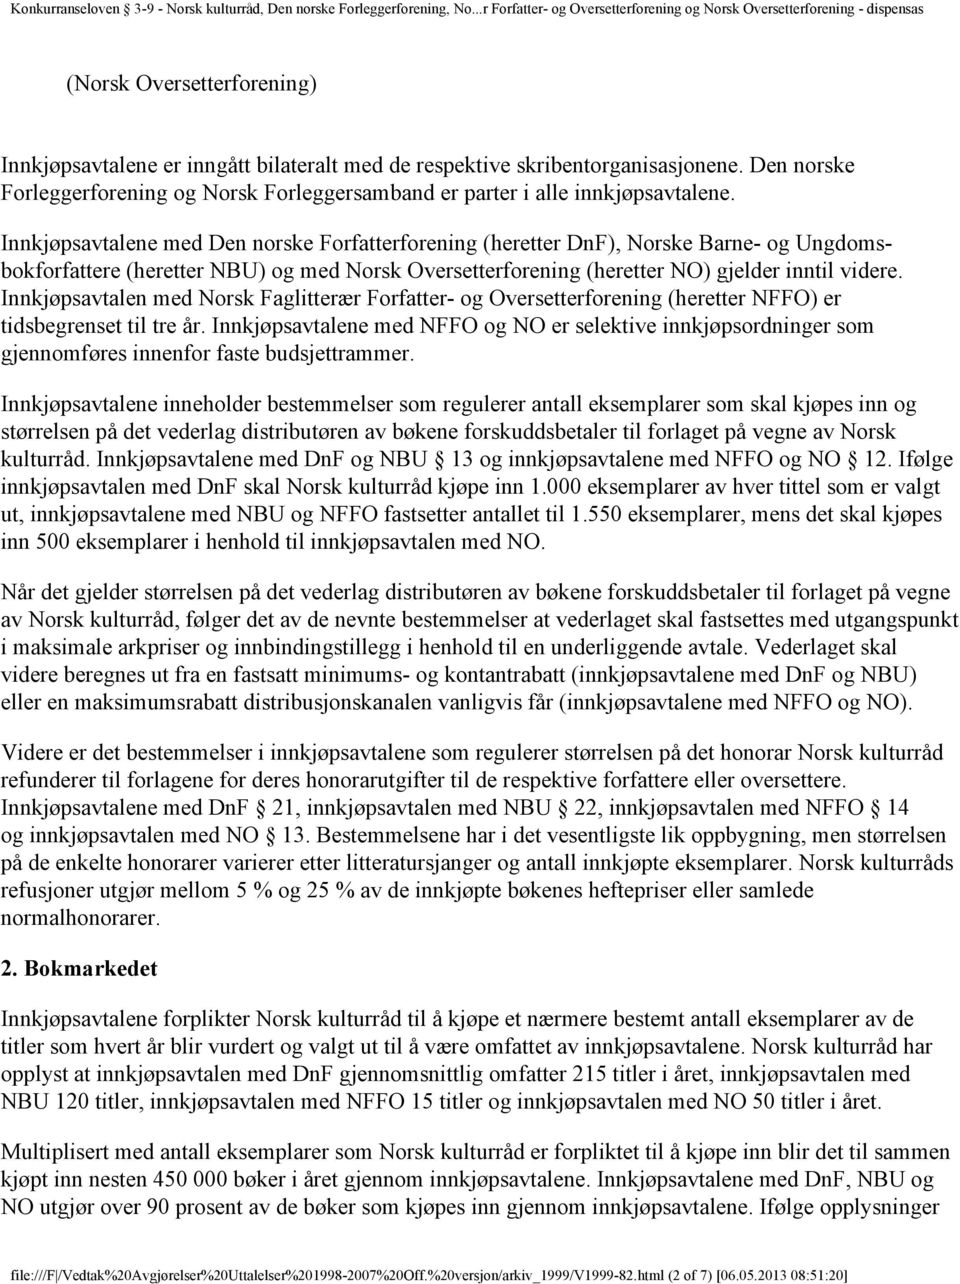 Innkjøpsavtalen med Norsk Faglitterær Forfatter- og Oversetterforening (heretter NFFO) er tidsbegrenset til tre år.